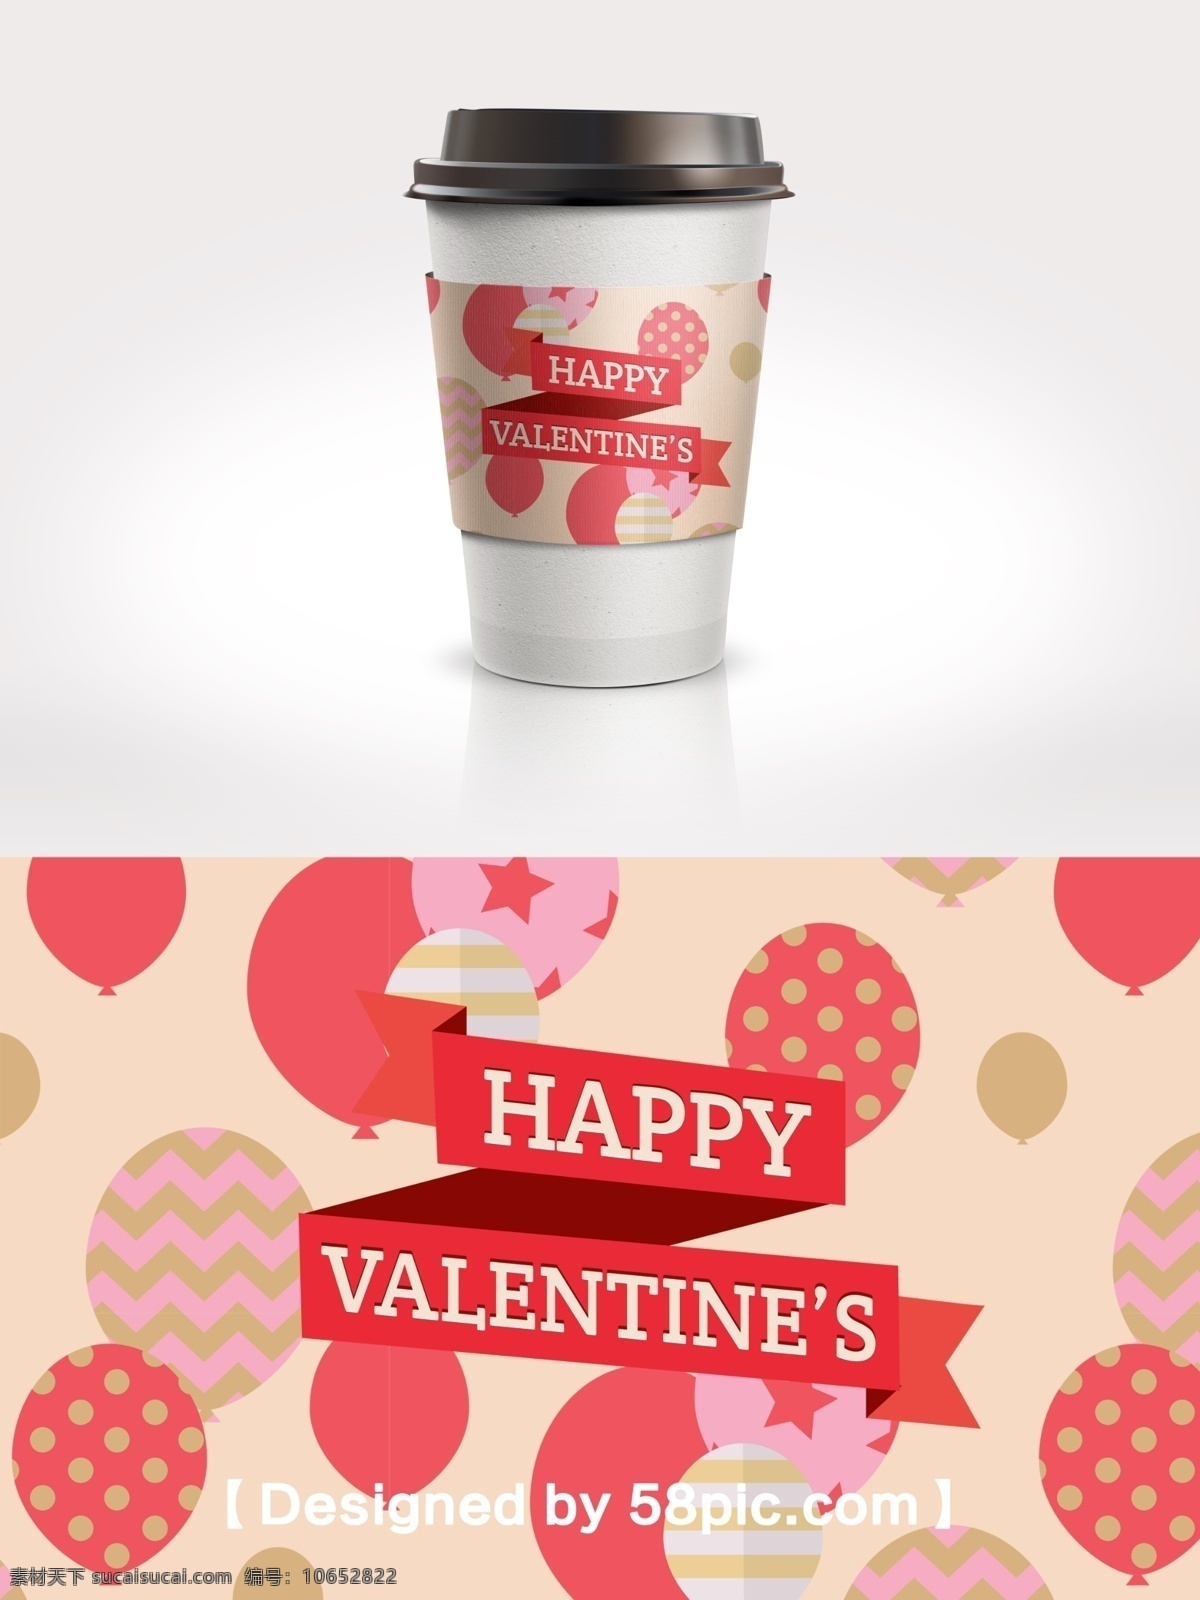 缤纷 气球 情人节 节日 包装 咖啡杯 套 2.14 psd素材 缤纷气球 波点气球 粉色 广告设计模版 节日包装 咖啡杯套设计